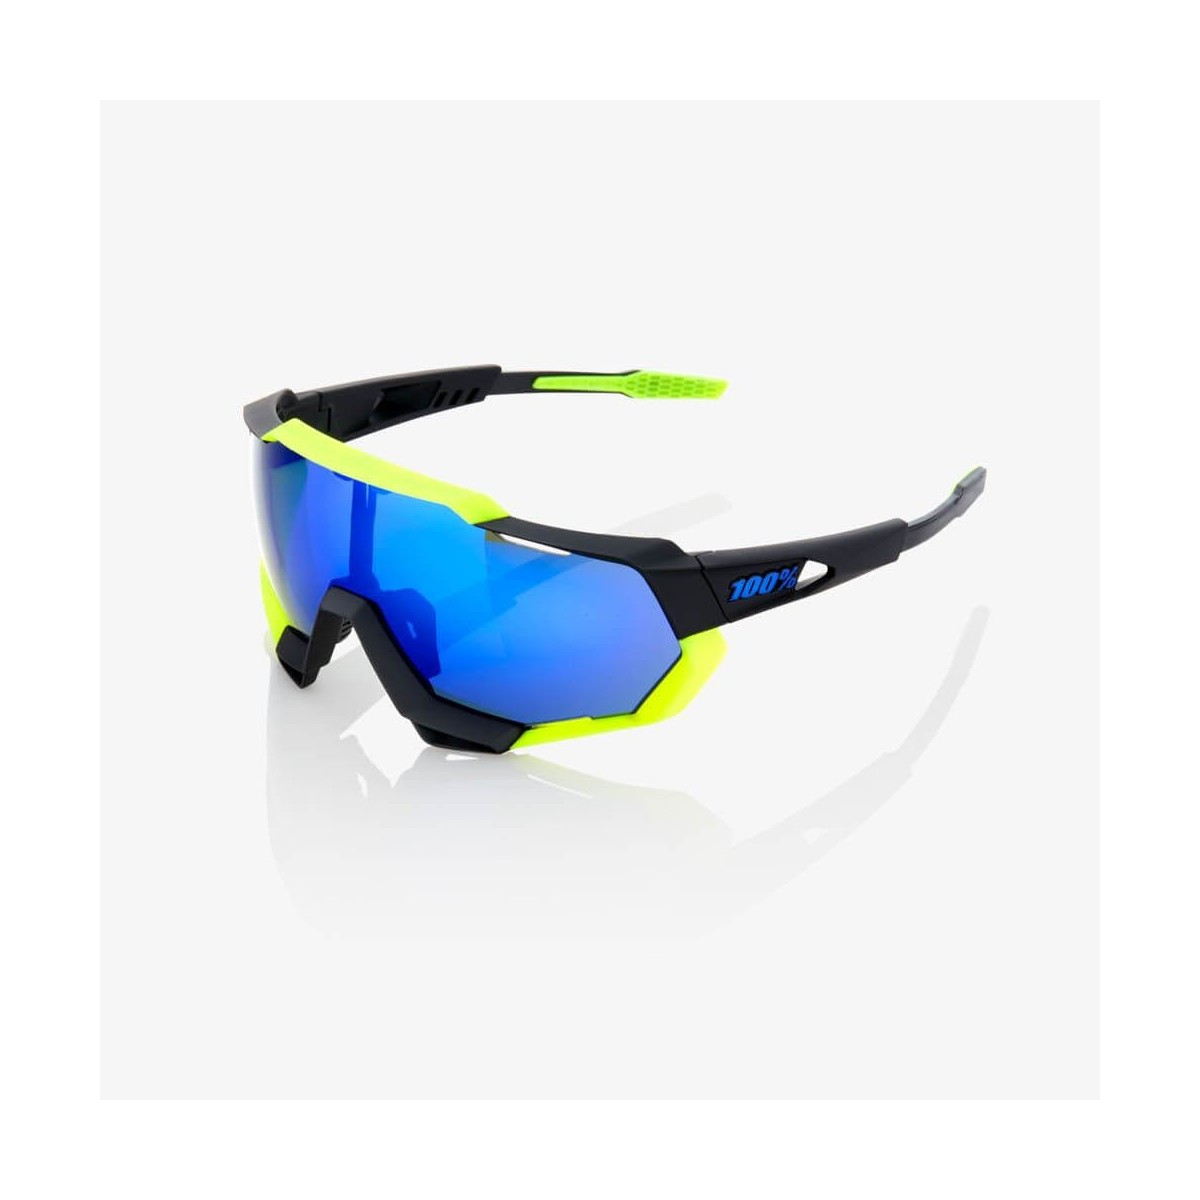 Gafas 100% Speedtrap Polished negro matte y amarillo neon con espejo azul eléctrico